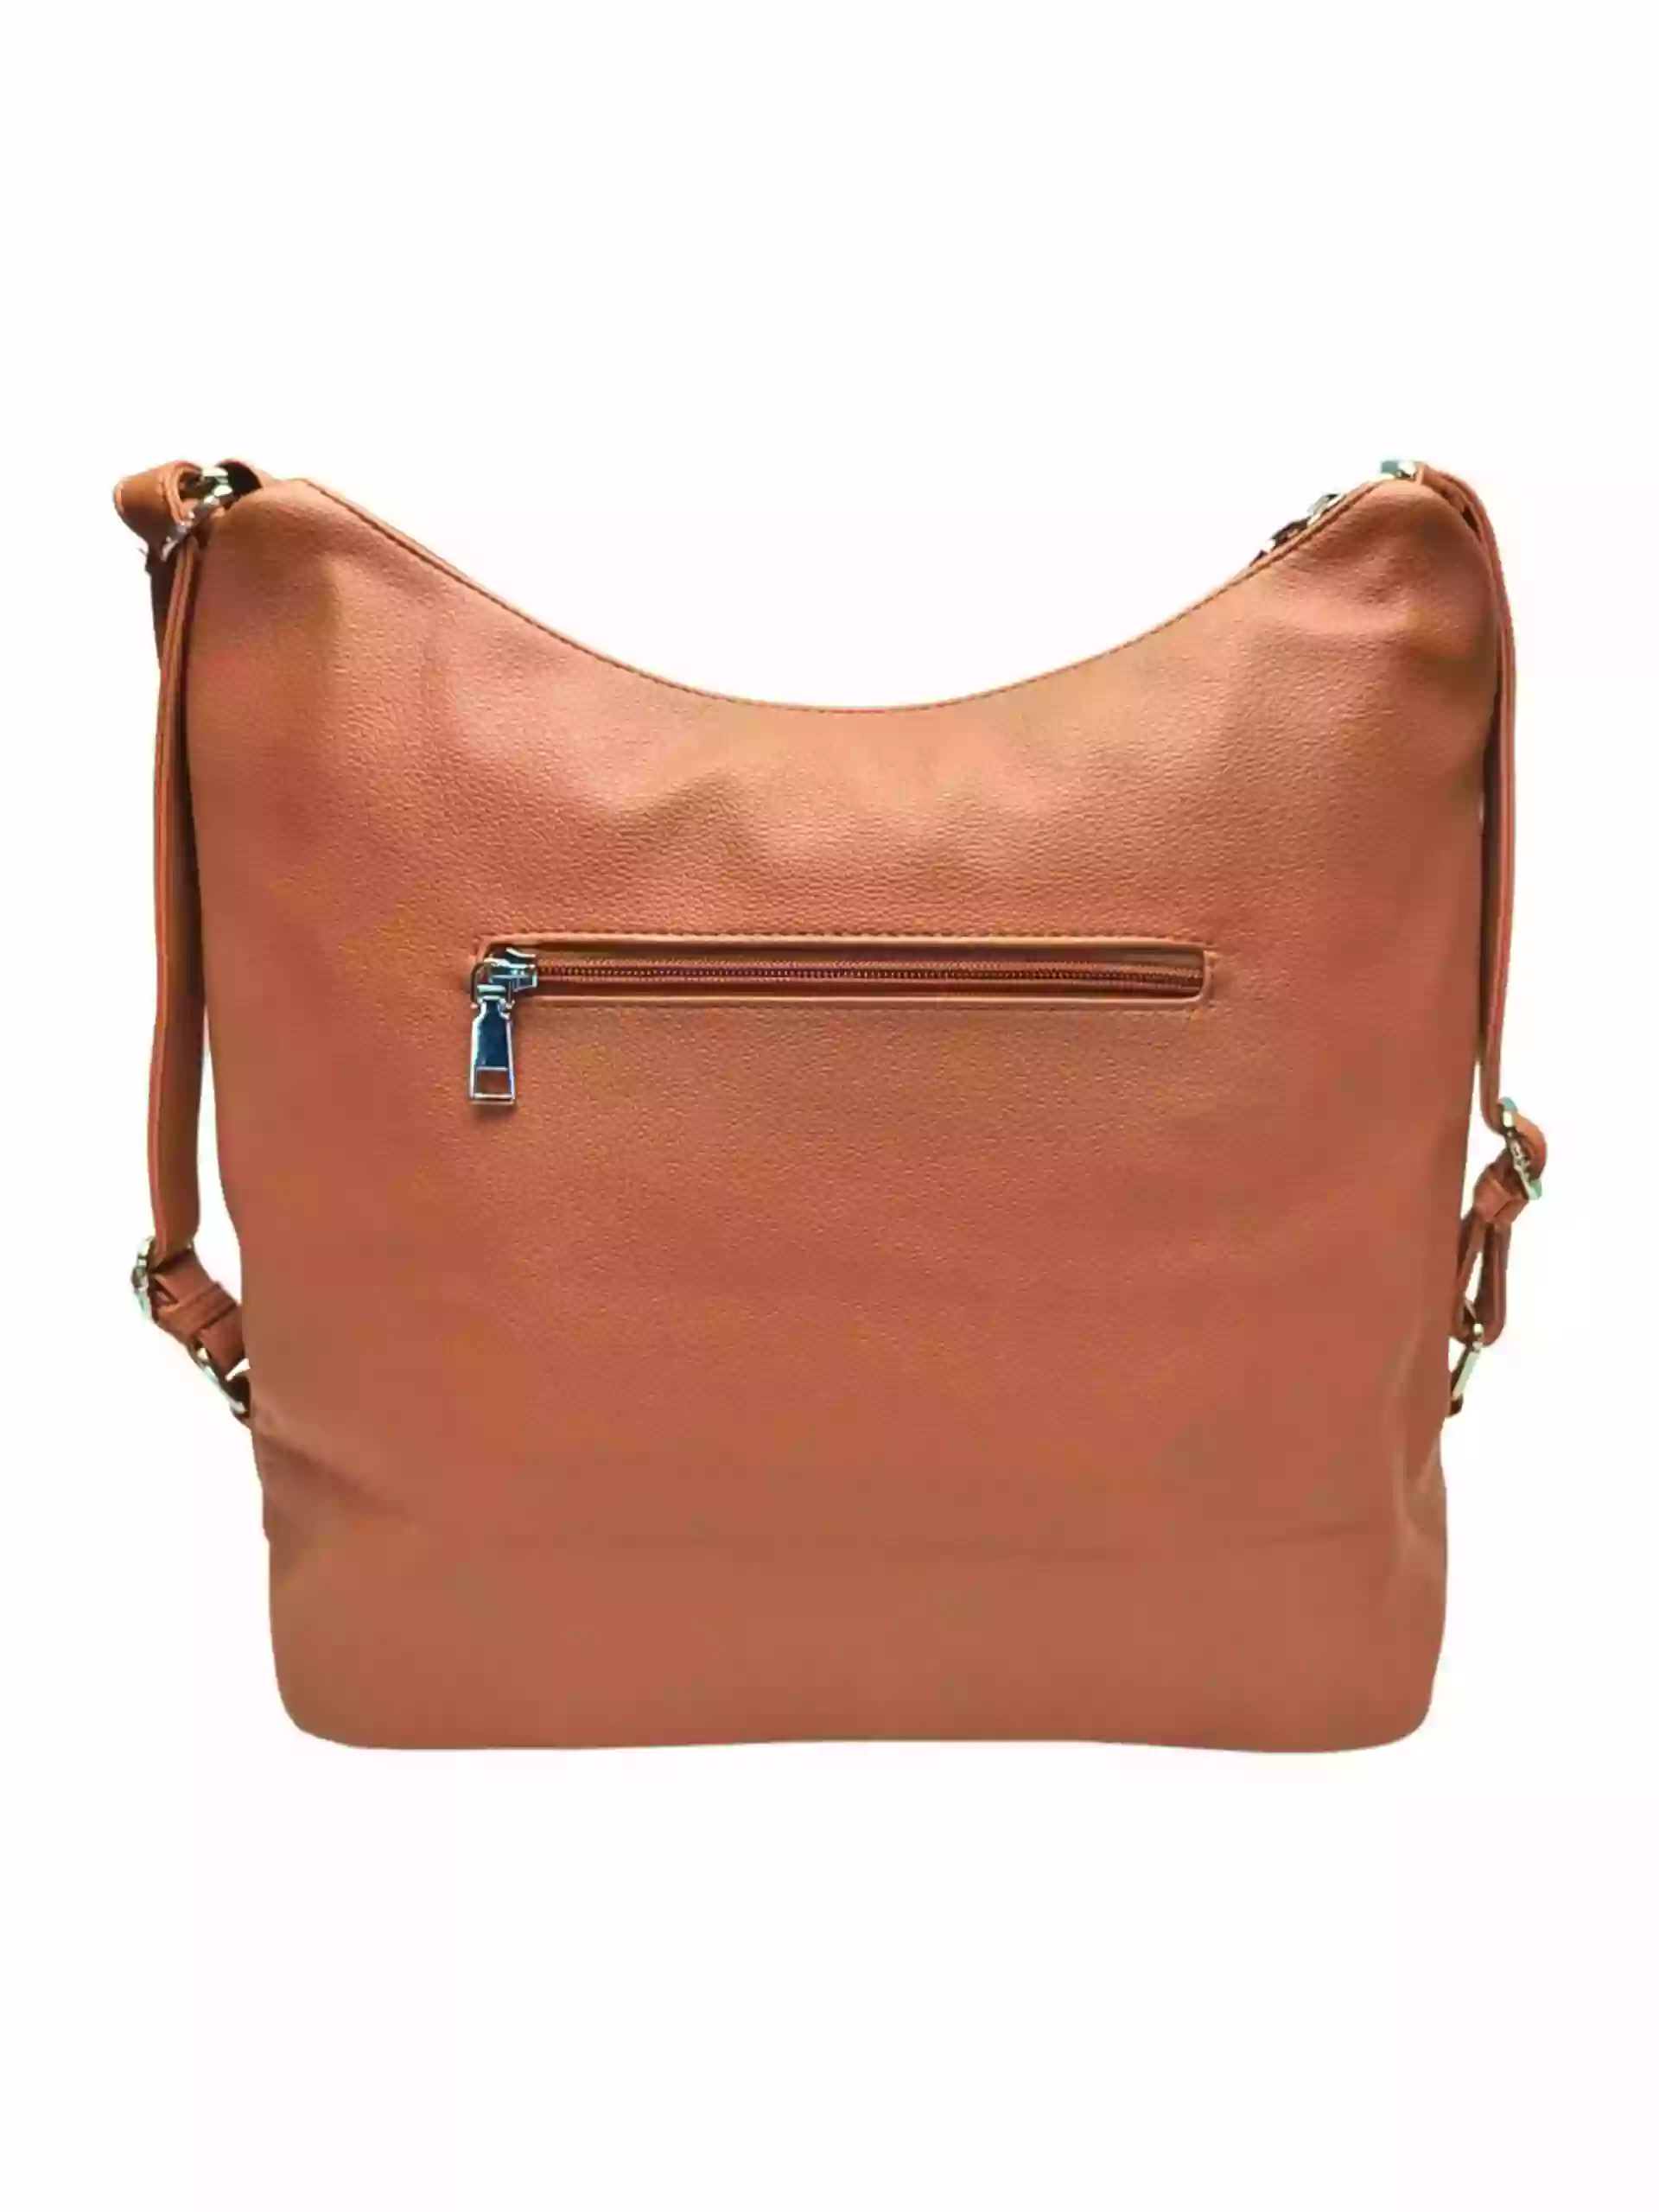 Velký středně hnědý kabelko-batoh s bočními kapsami, Tapple, 9314-3, zadní strana kabelko-batohu